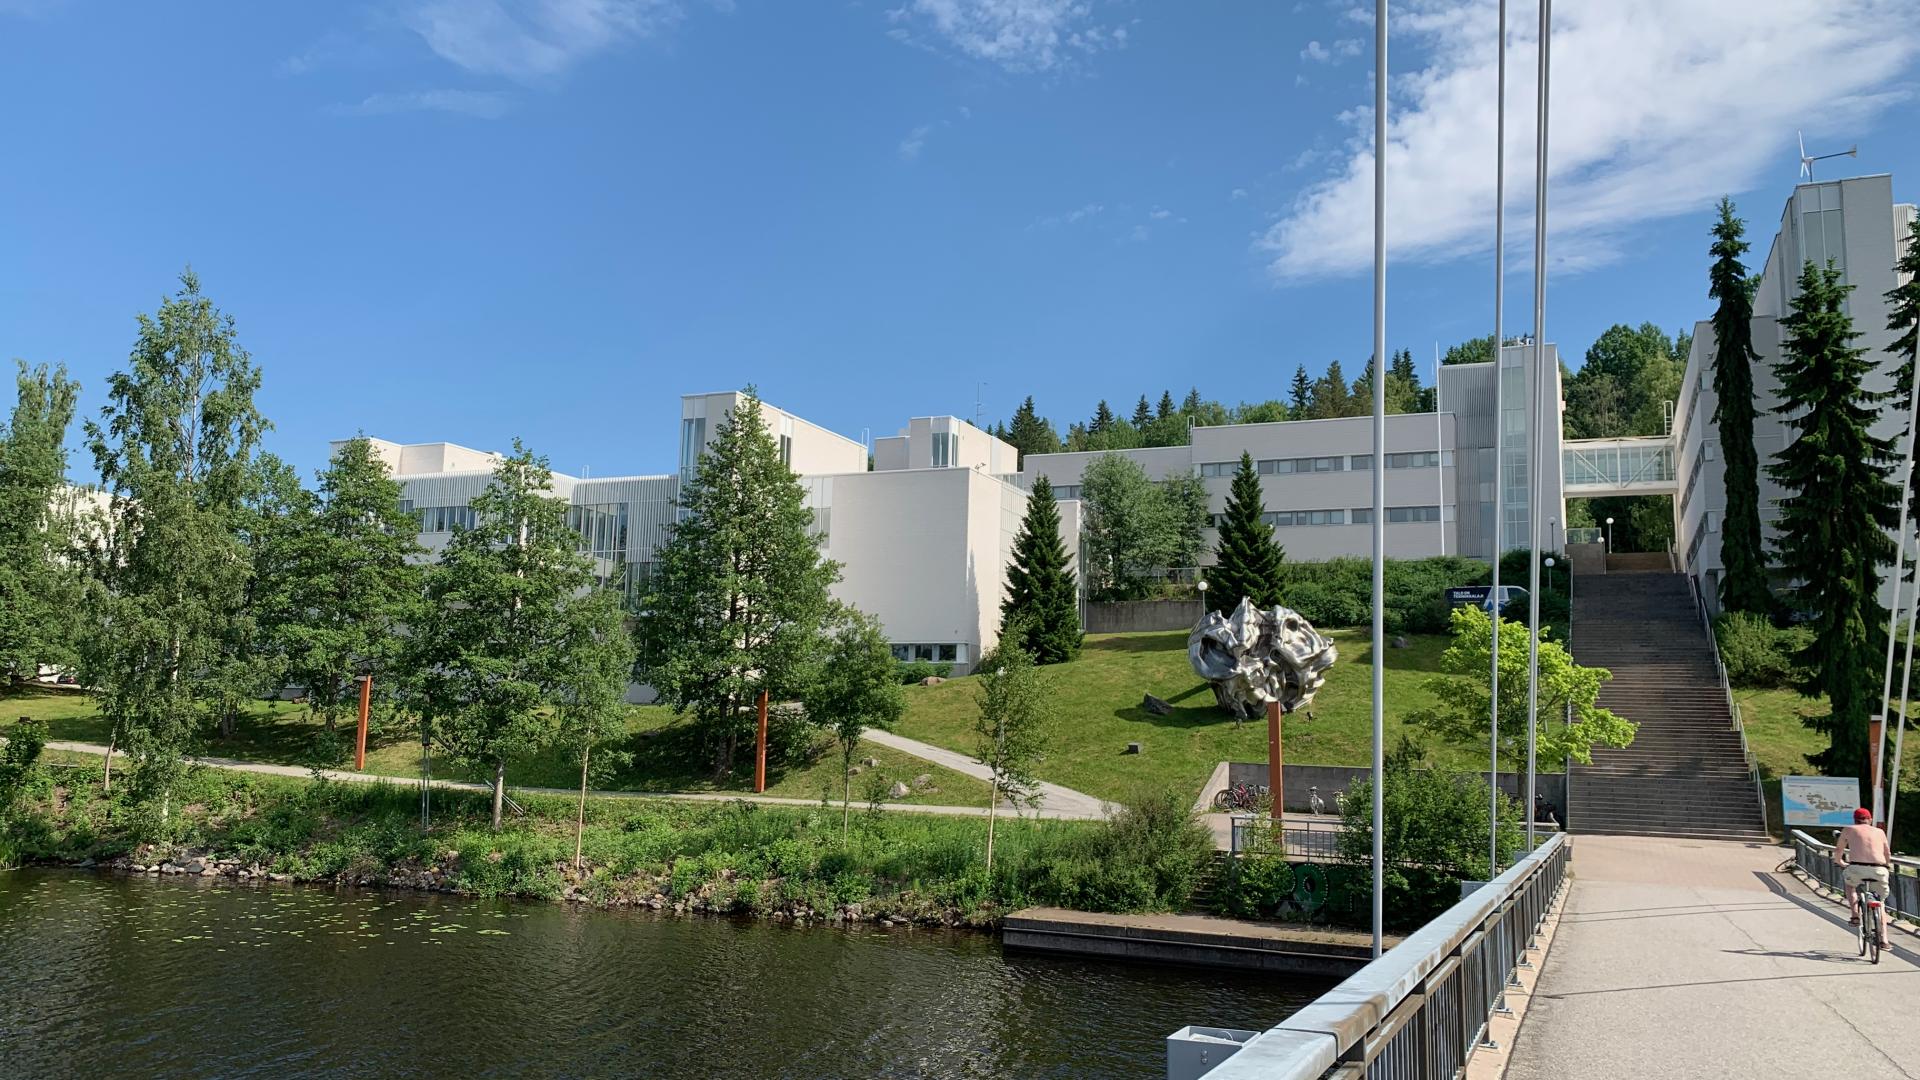 Phyics department of the University of Jyväskylä